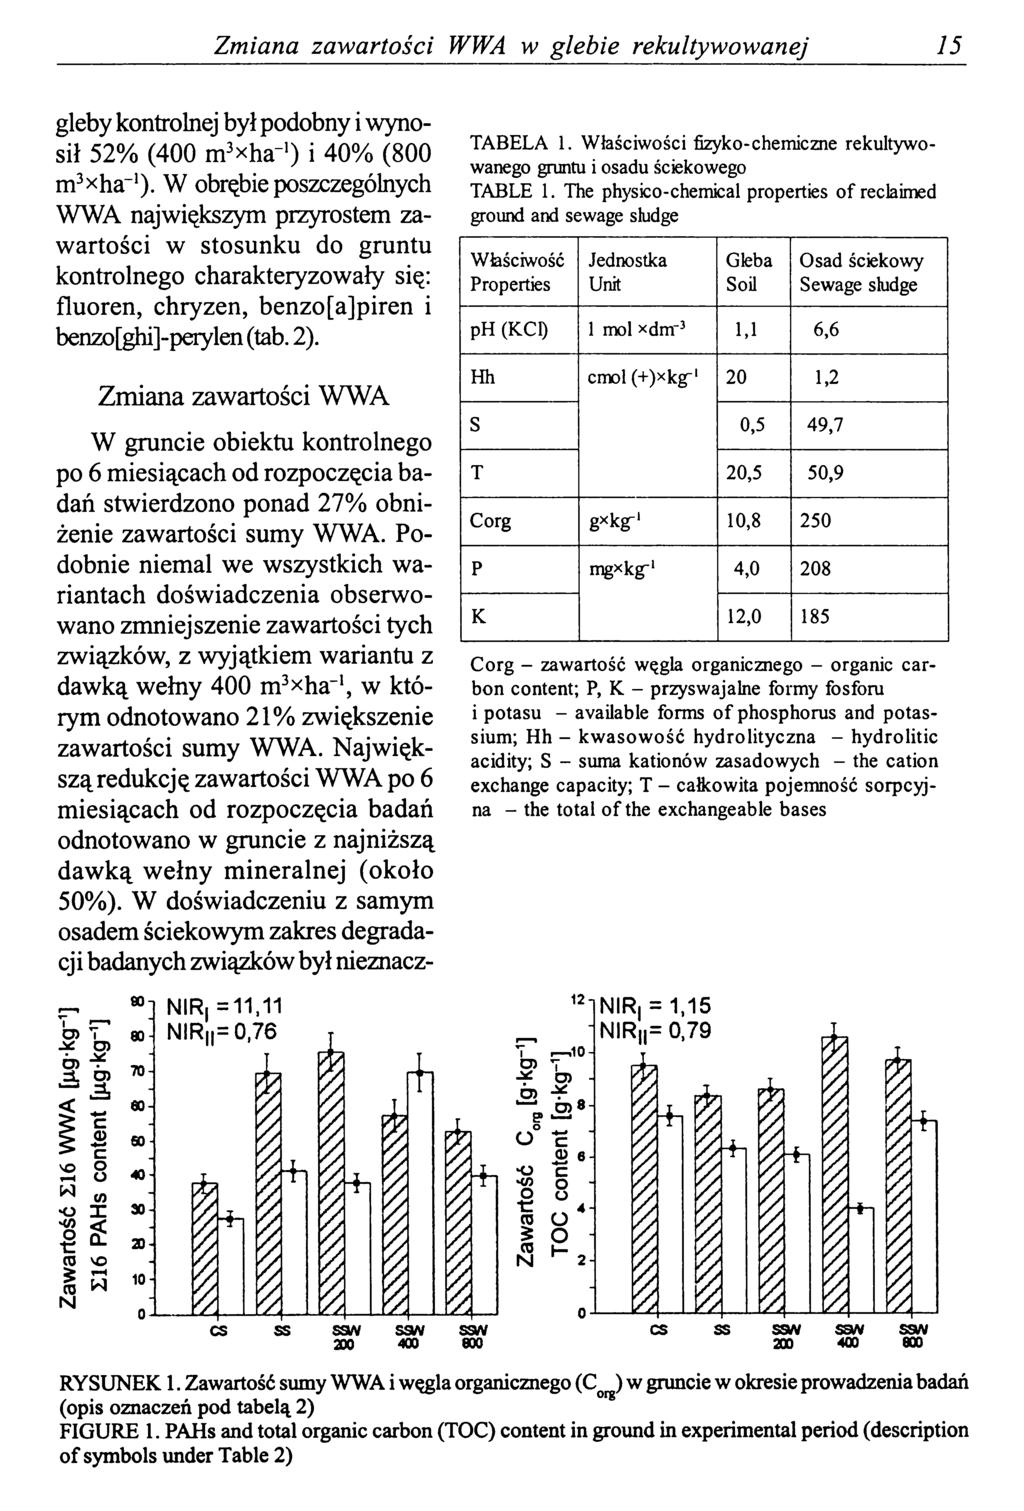 Zmiana zawartości WWA w glebie rekultywowanej 15 gleby kontrolnej był podobny i wynosił 52% (400 m3xha~') i 40% (800 m3xha~').